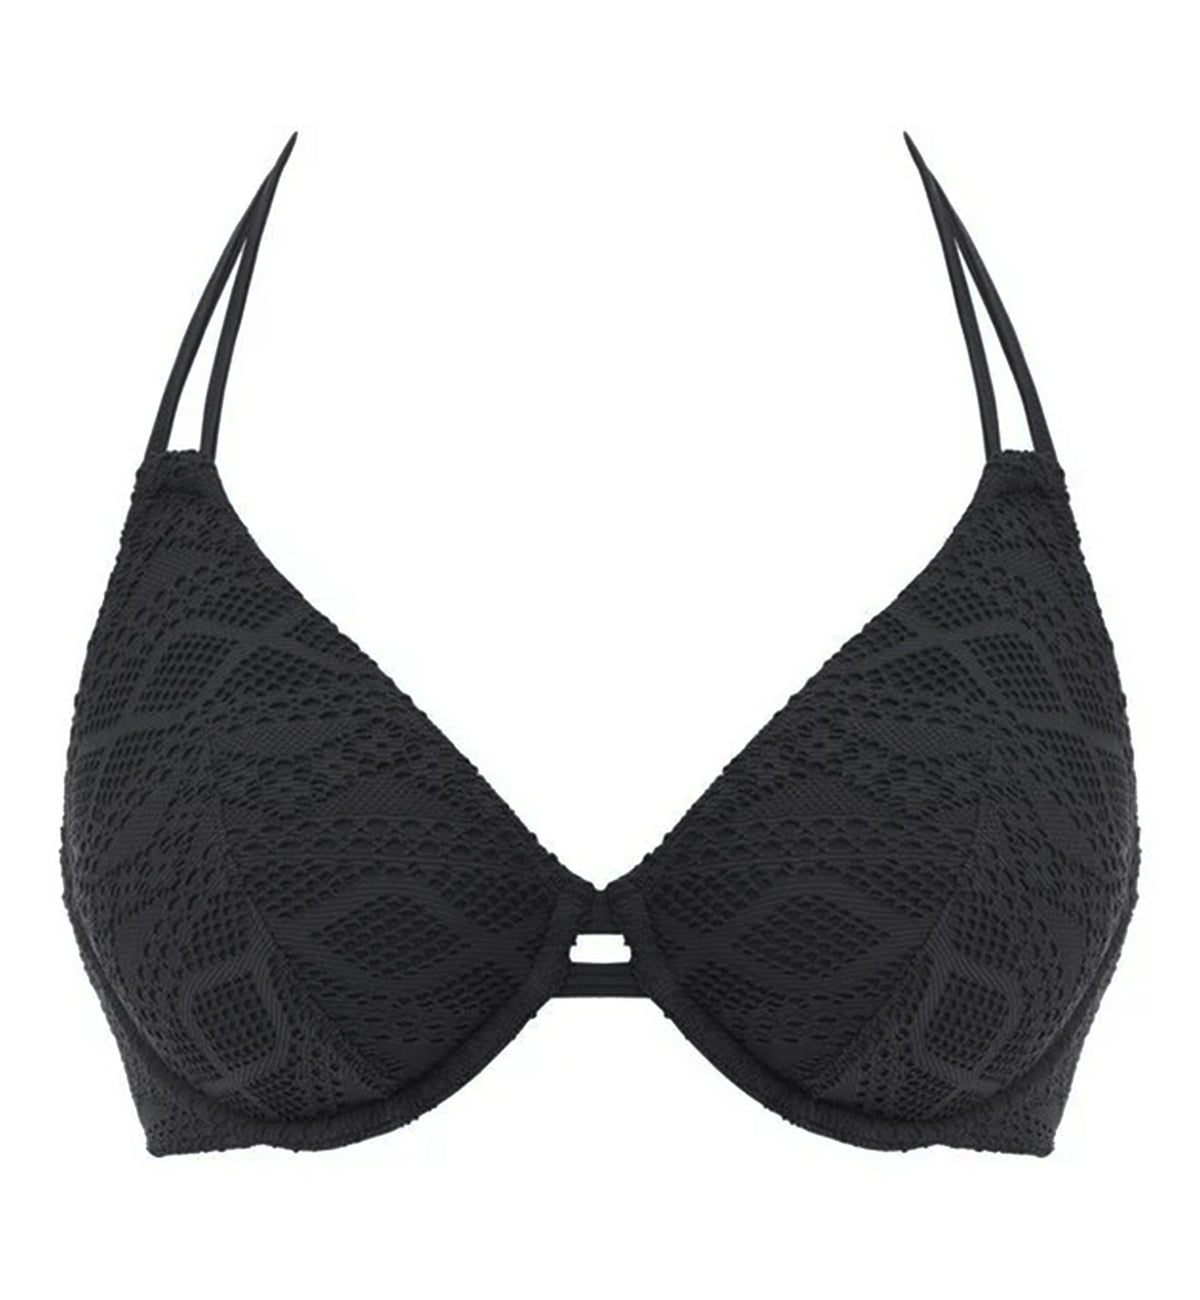 Freya Sundance Bandless Underwire Halter Bikini Top (3971),30D,Black - Black,30D